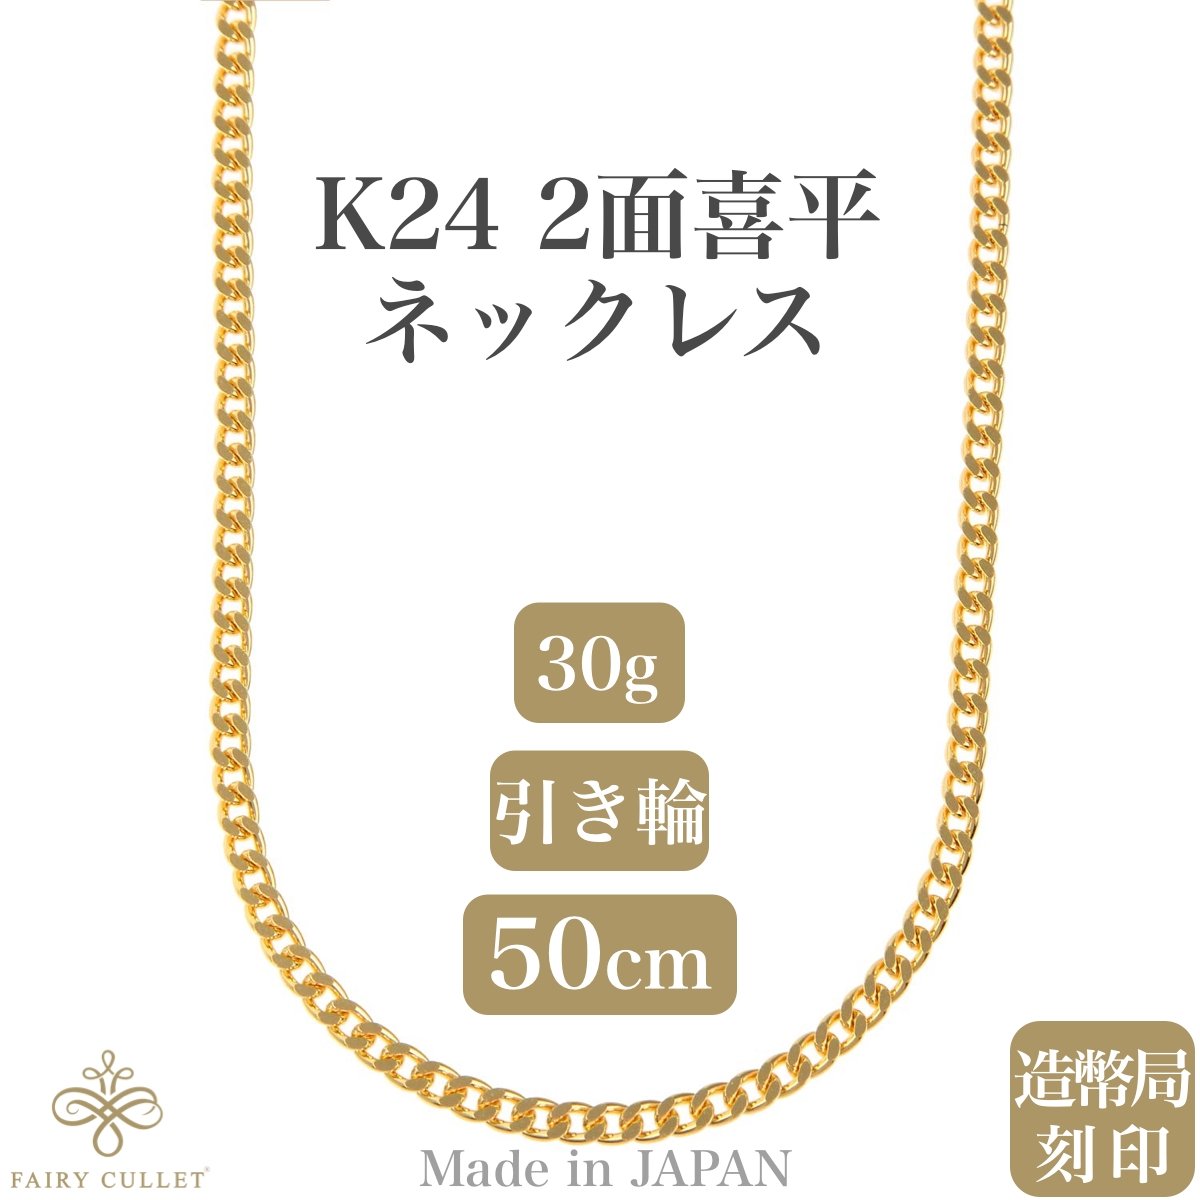 24金ネックレス K24 2面喜平チェーン 日本製 純金 検定印 30g 50cm ...